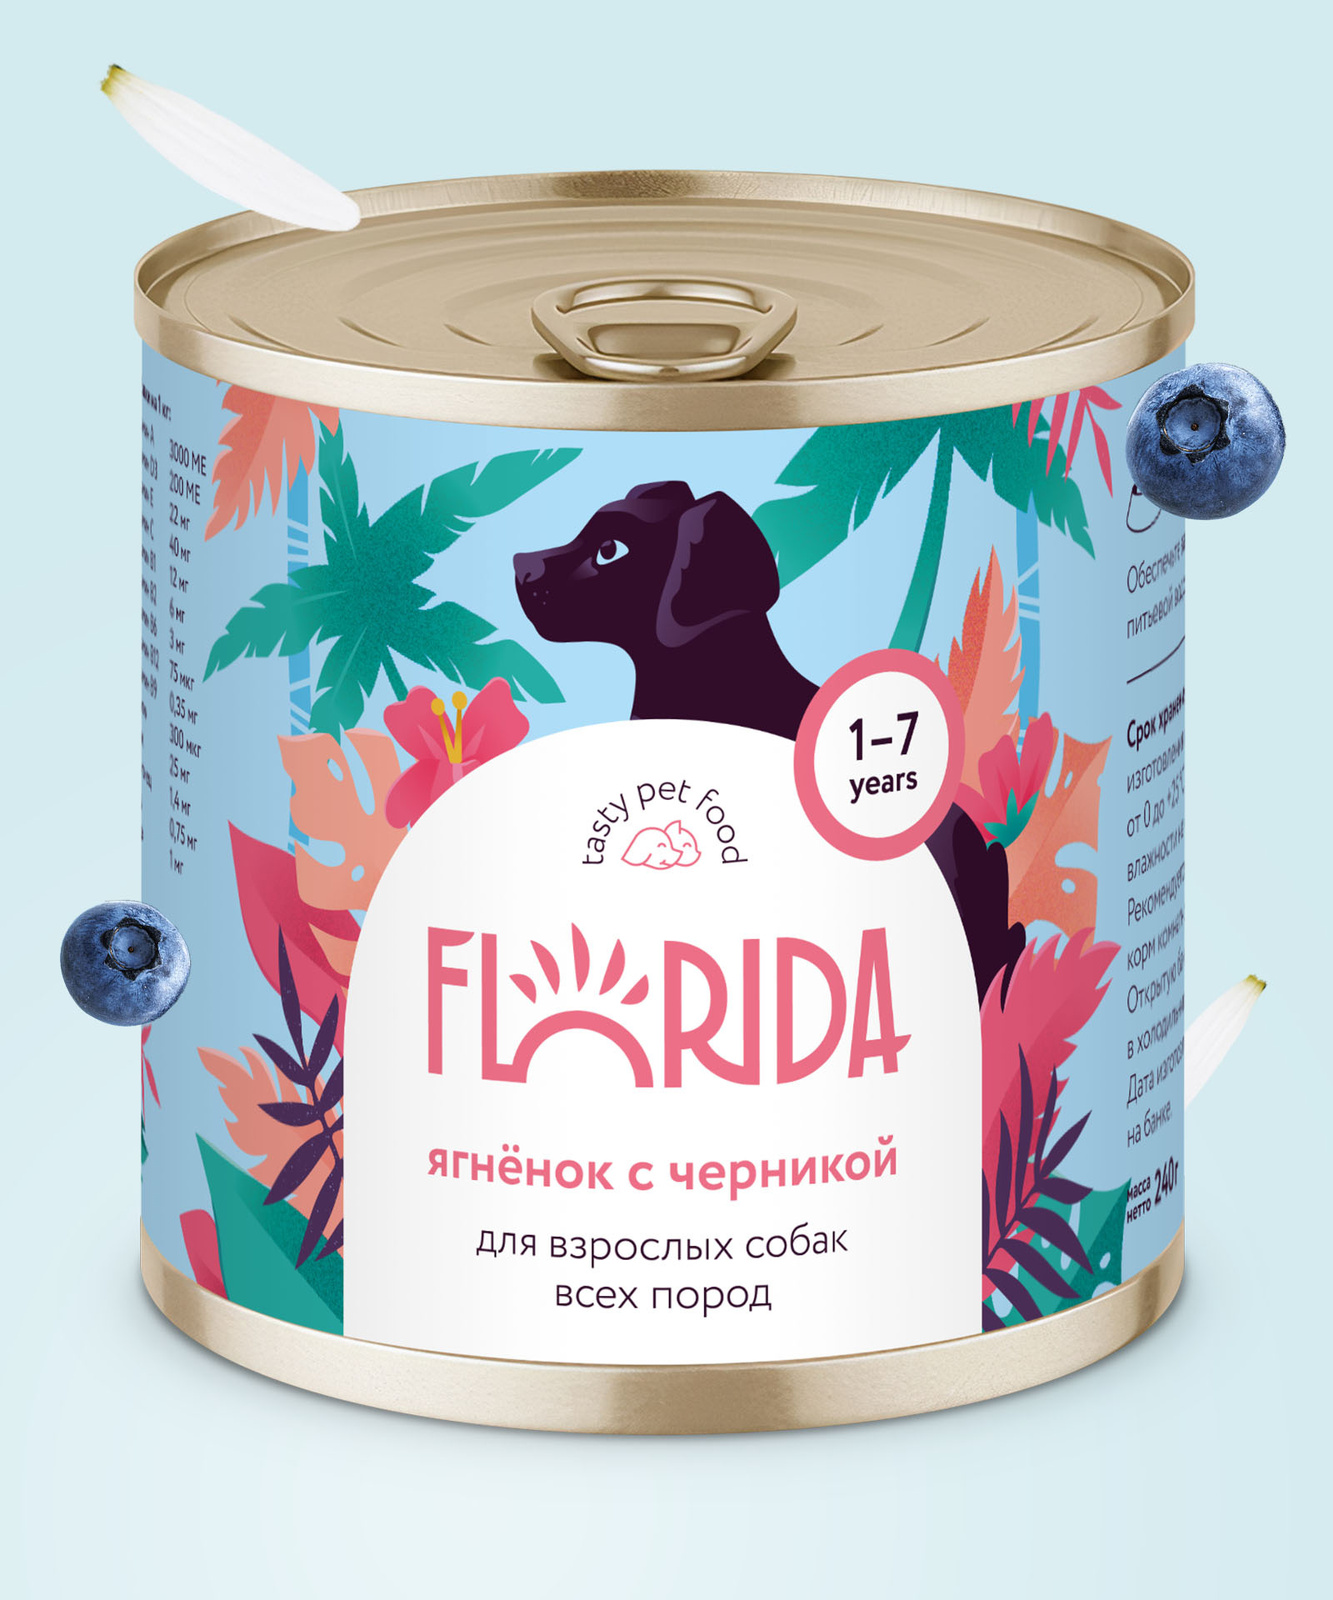 FLORIDA консервы FLORIDA консервы консервы для собак Ягненок с черникой (240 г) цена и фото